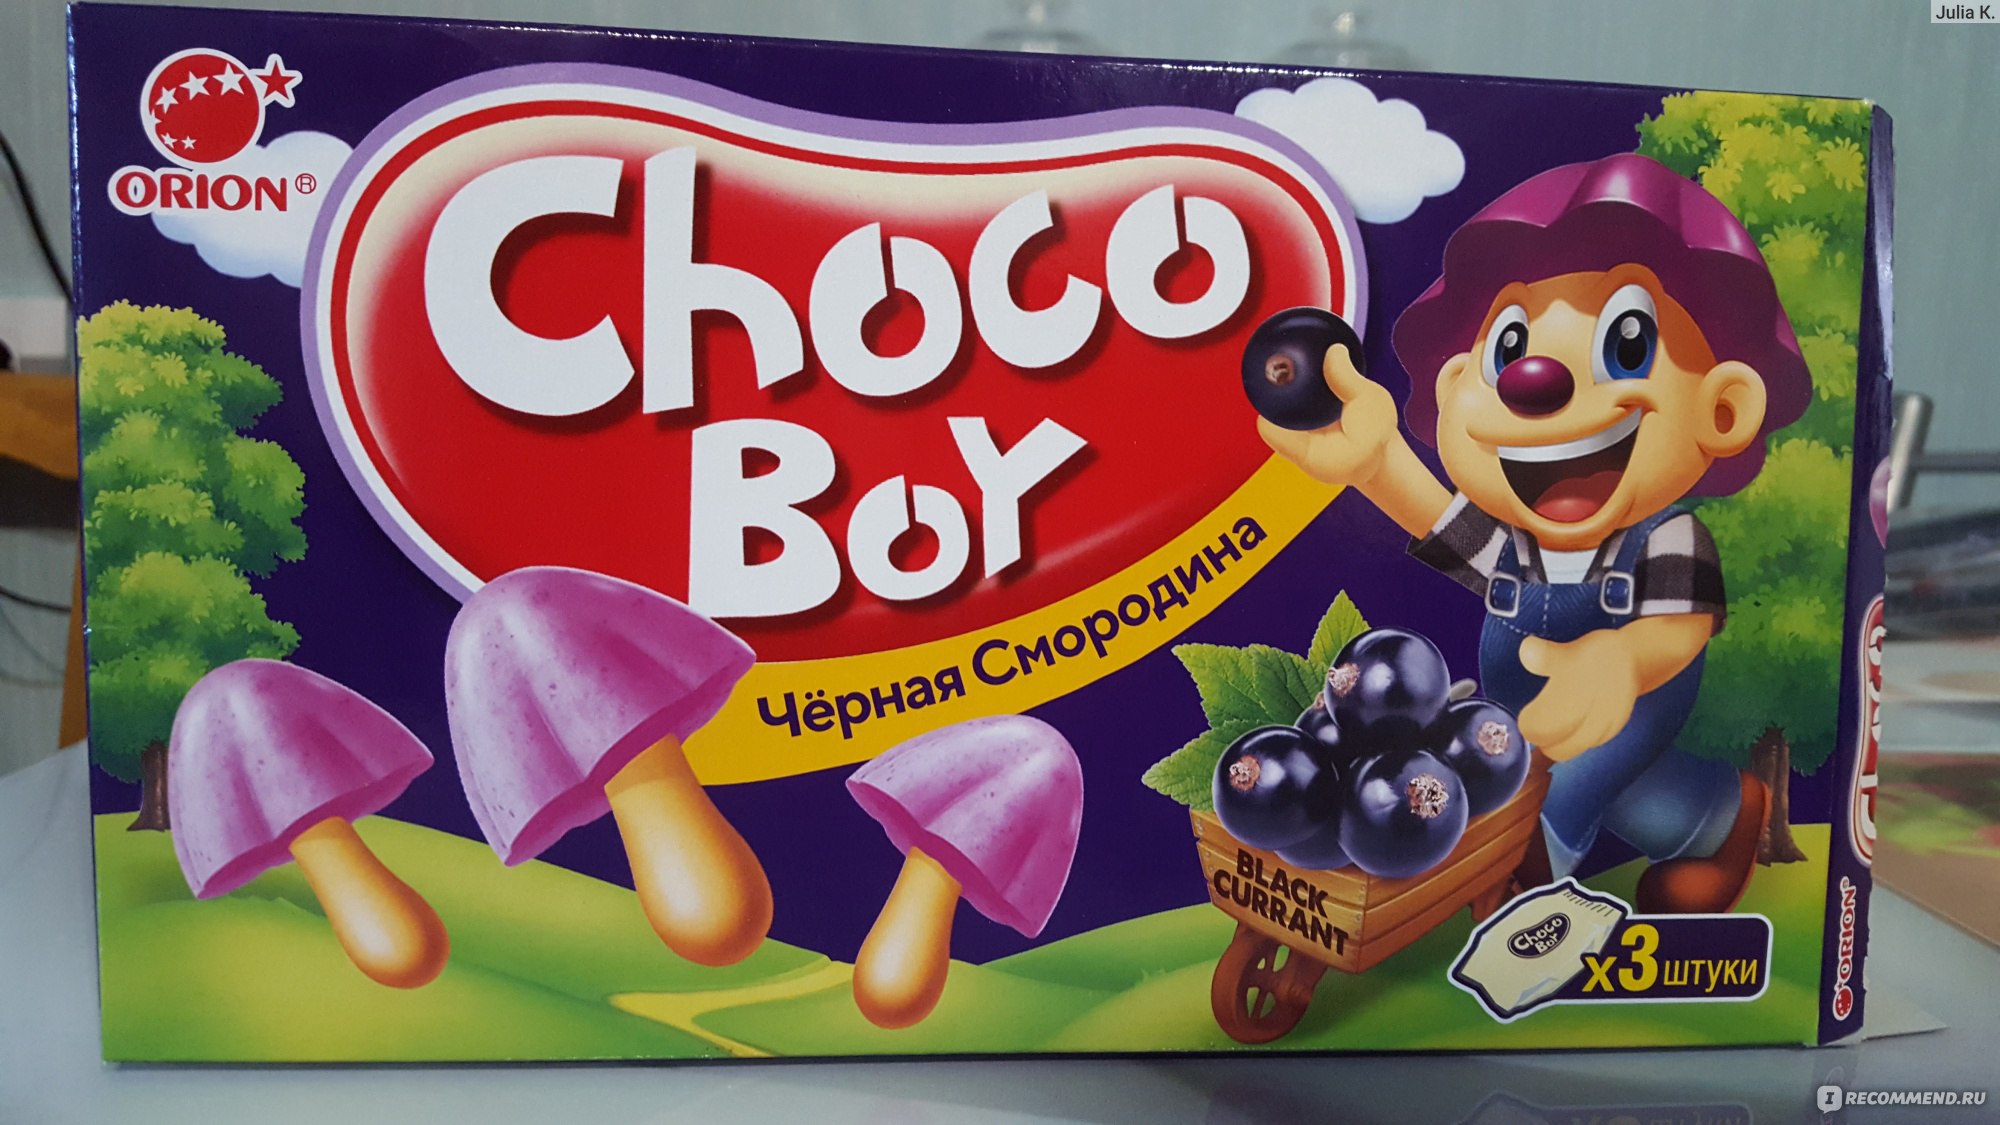 Choco boy вкусы